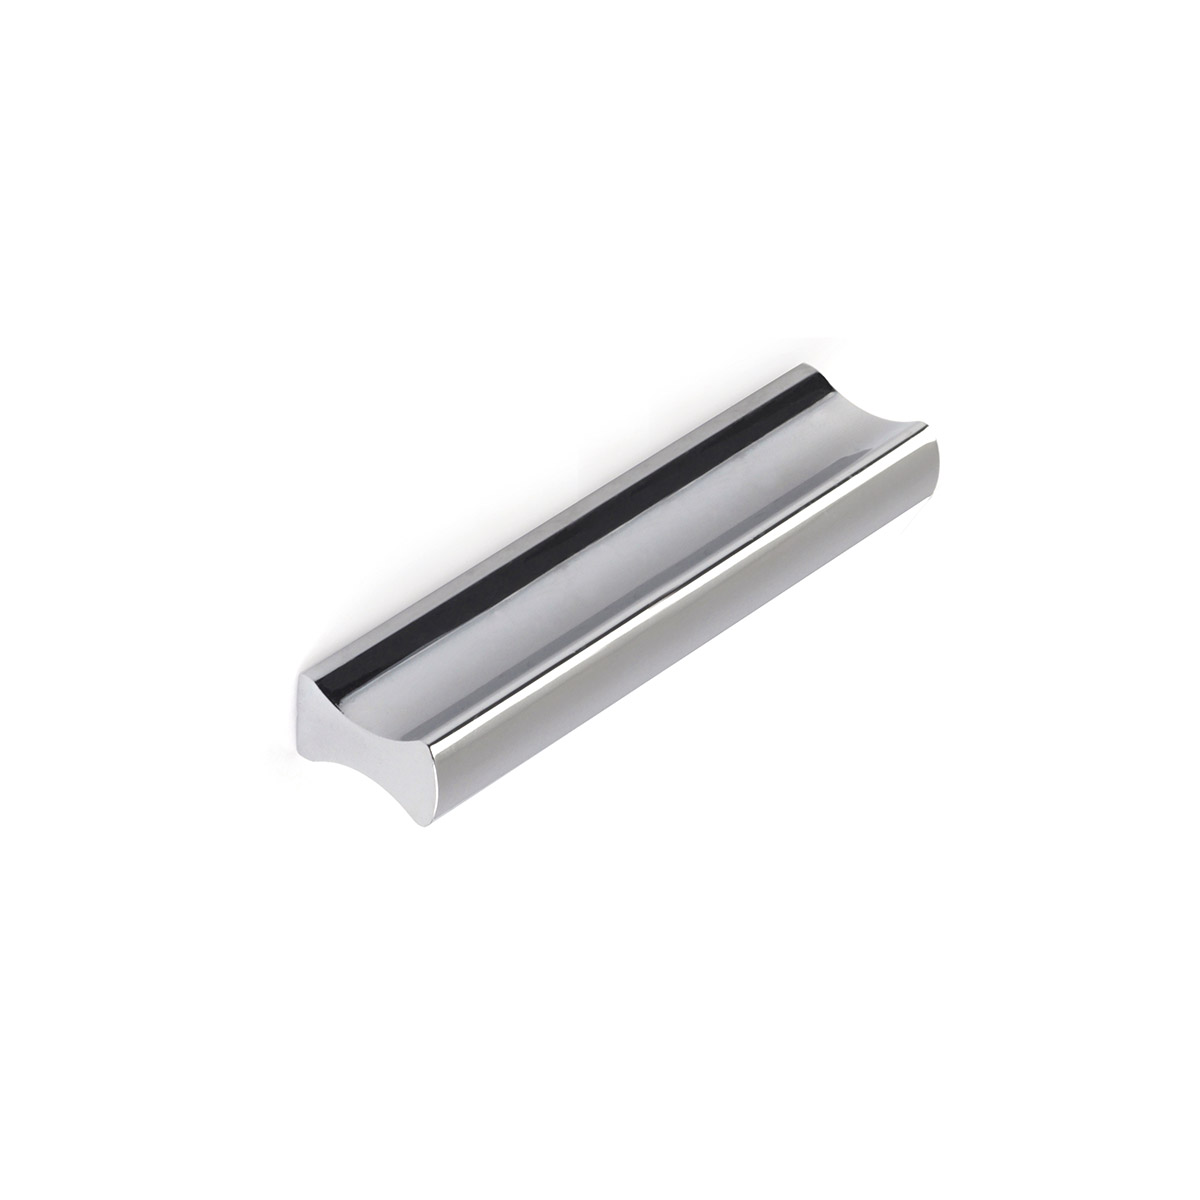 Asa de aluminio con acabado cromo brillo, dimensiones: 88x9x17mm entrepuntos: 64mm